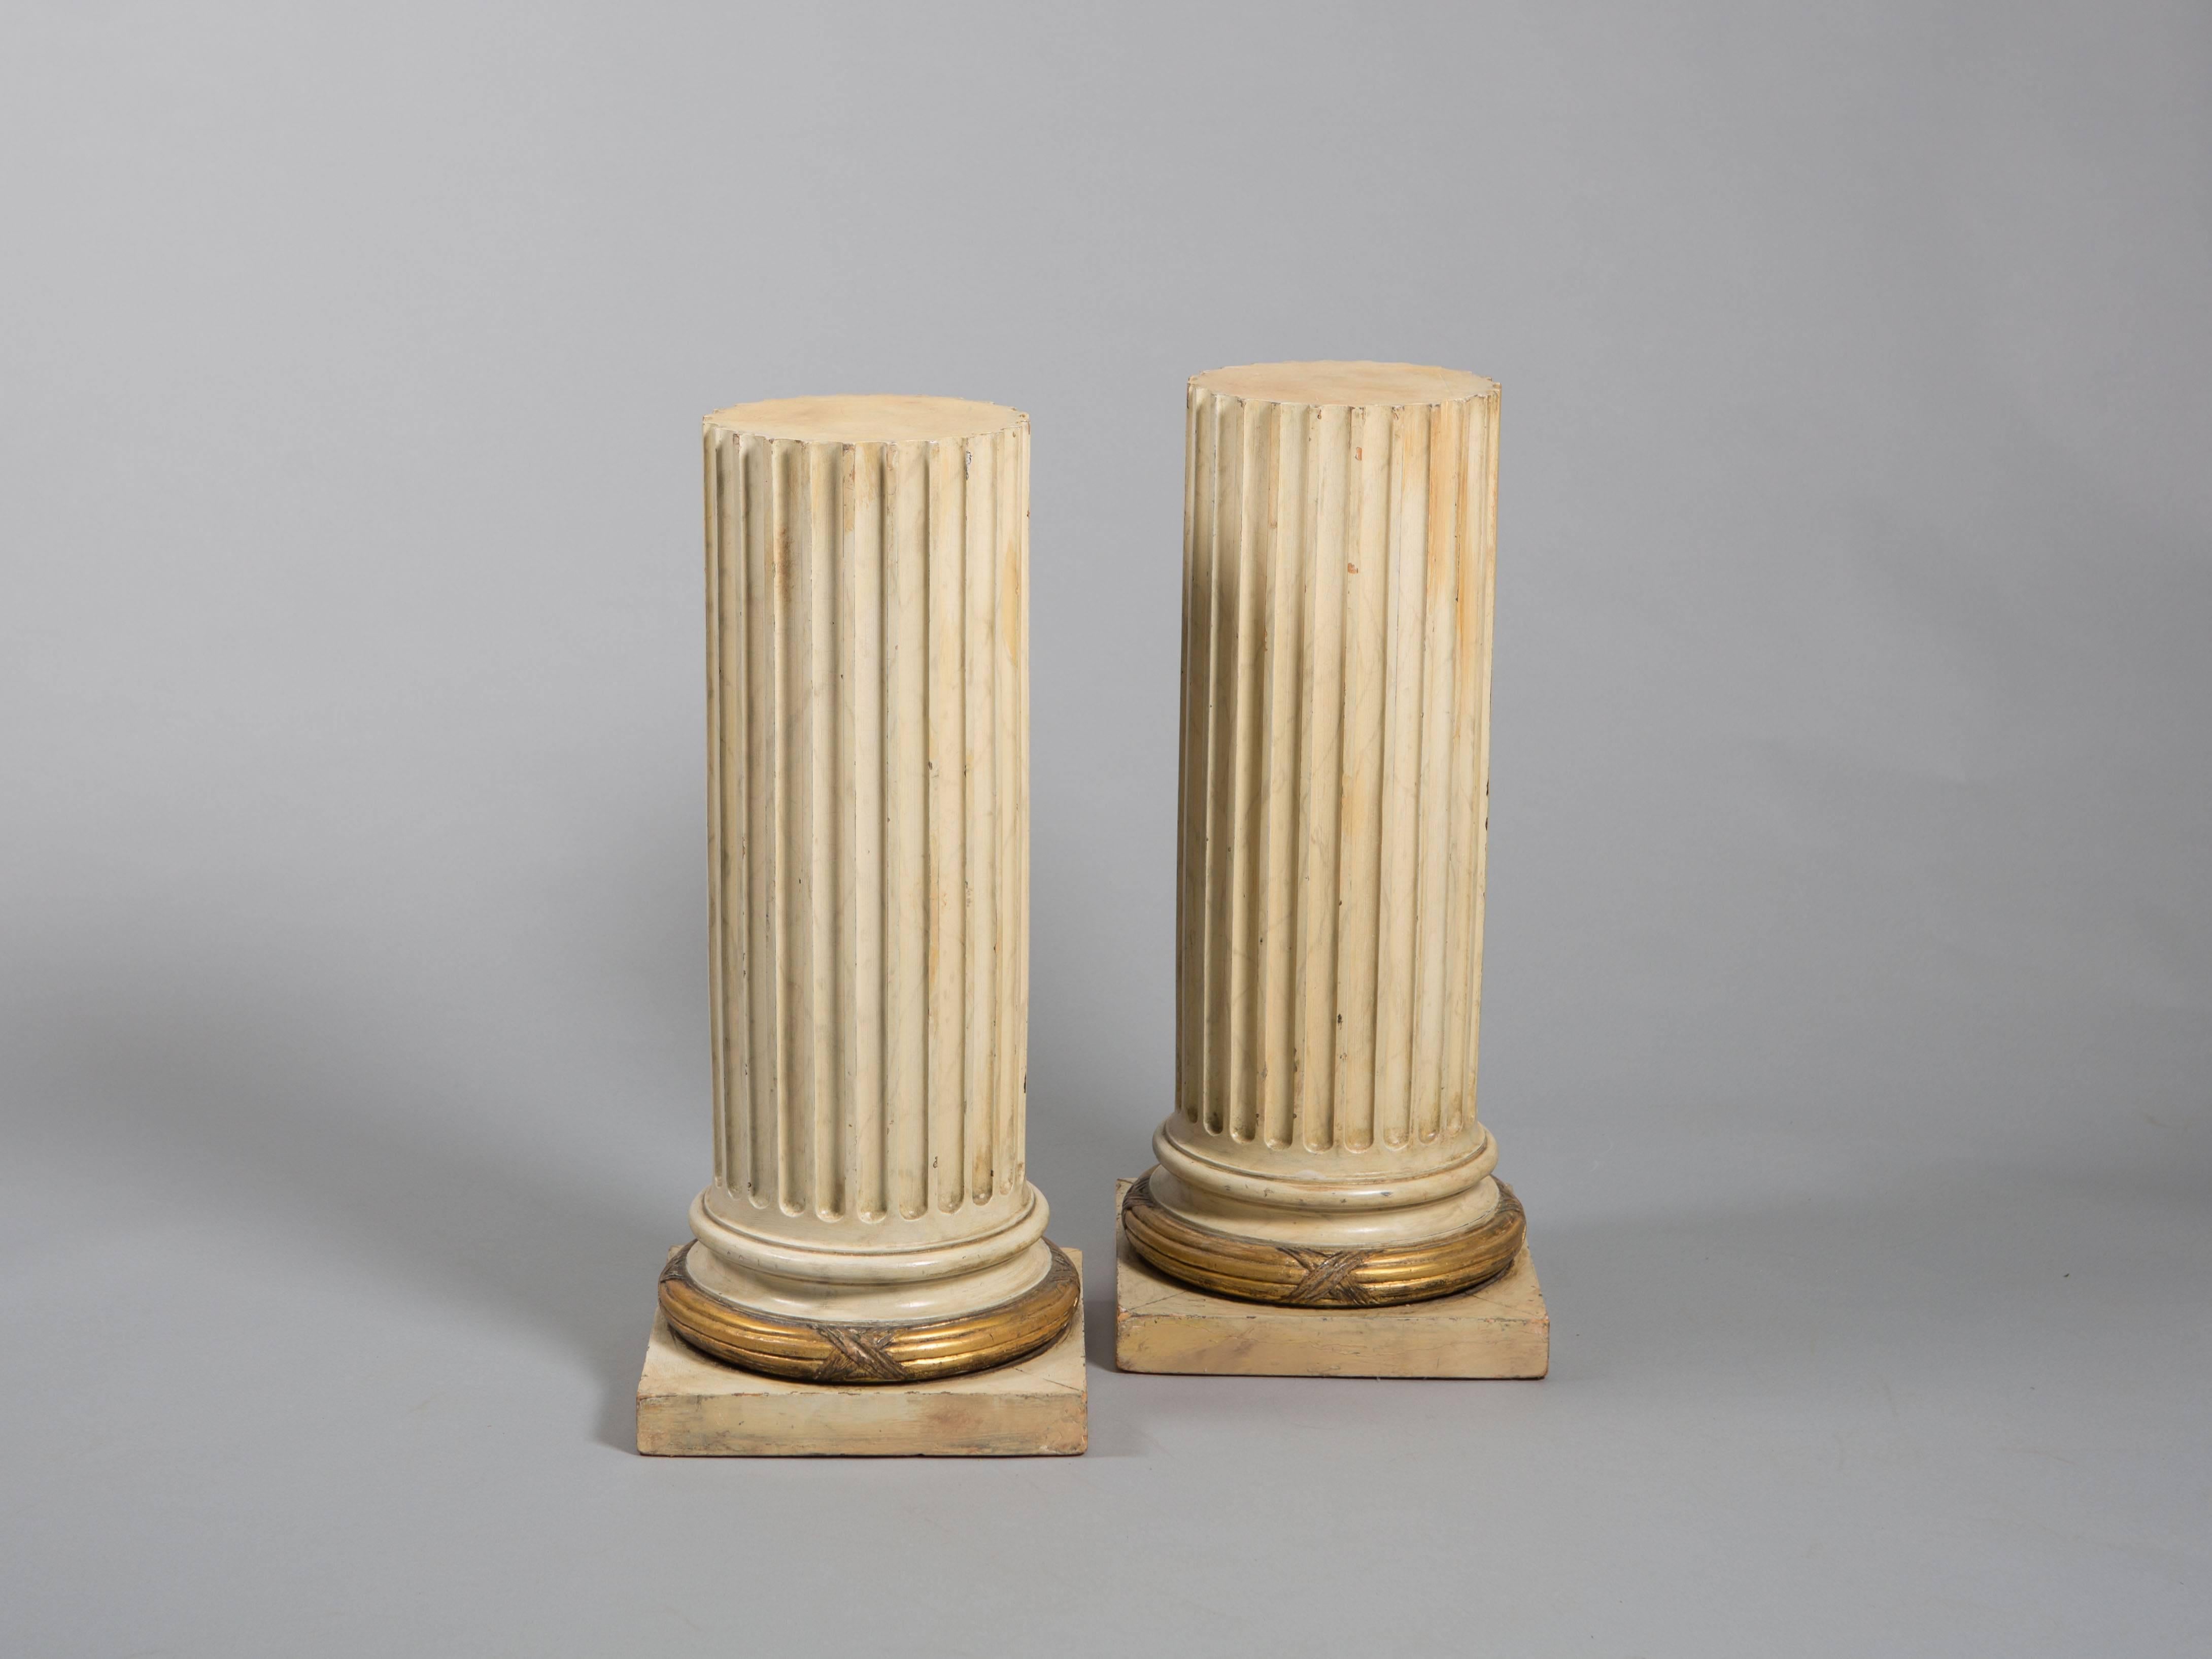 Paire de colonnes cannelées en bois avec bandeau doré sur la base. Les colonnes montrent magnifiquement leur âge. Petites fissures dans la base qui n'affectent pas leur intégrité structurelle.